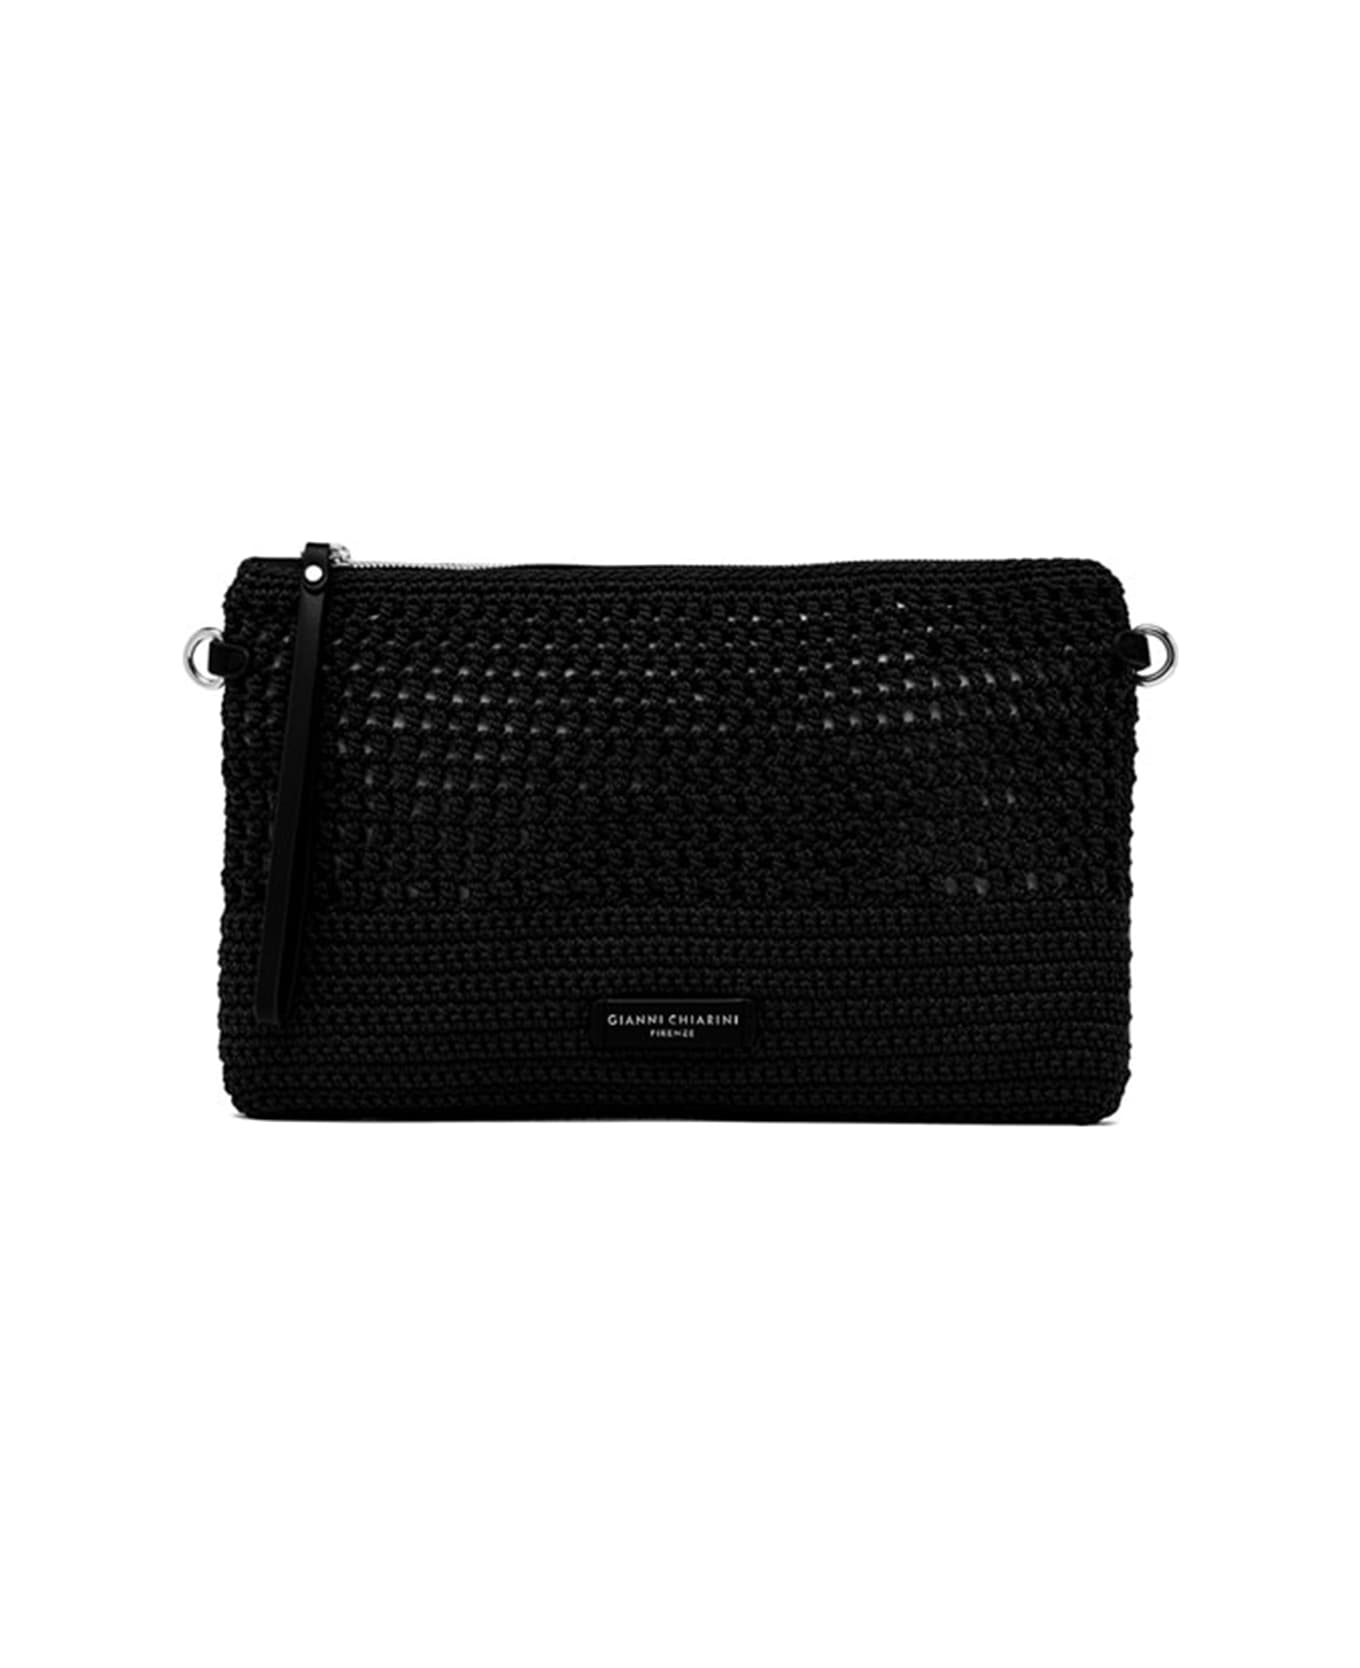 Gianni Chiarini Black Victoria Clutch Bag In Crochet Fabric - NERO クラッチバッグ